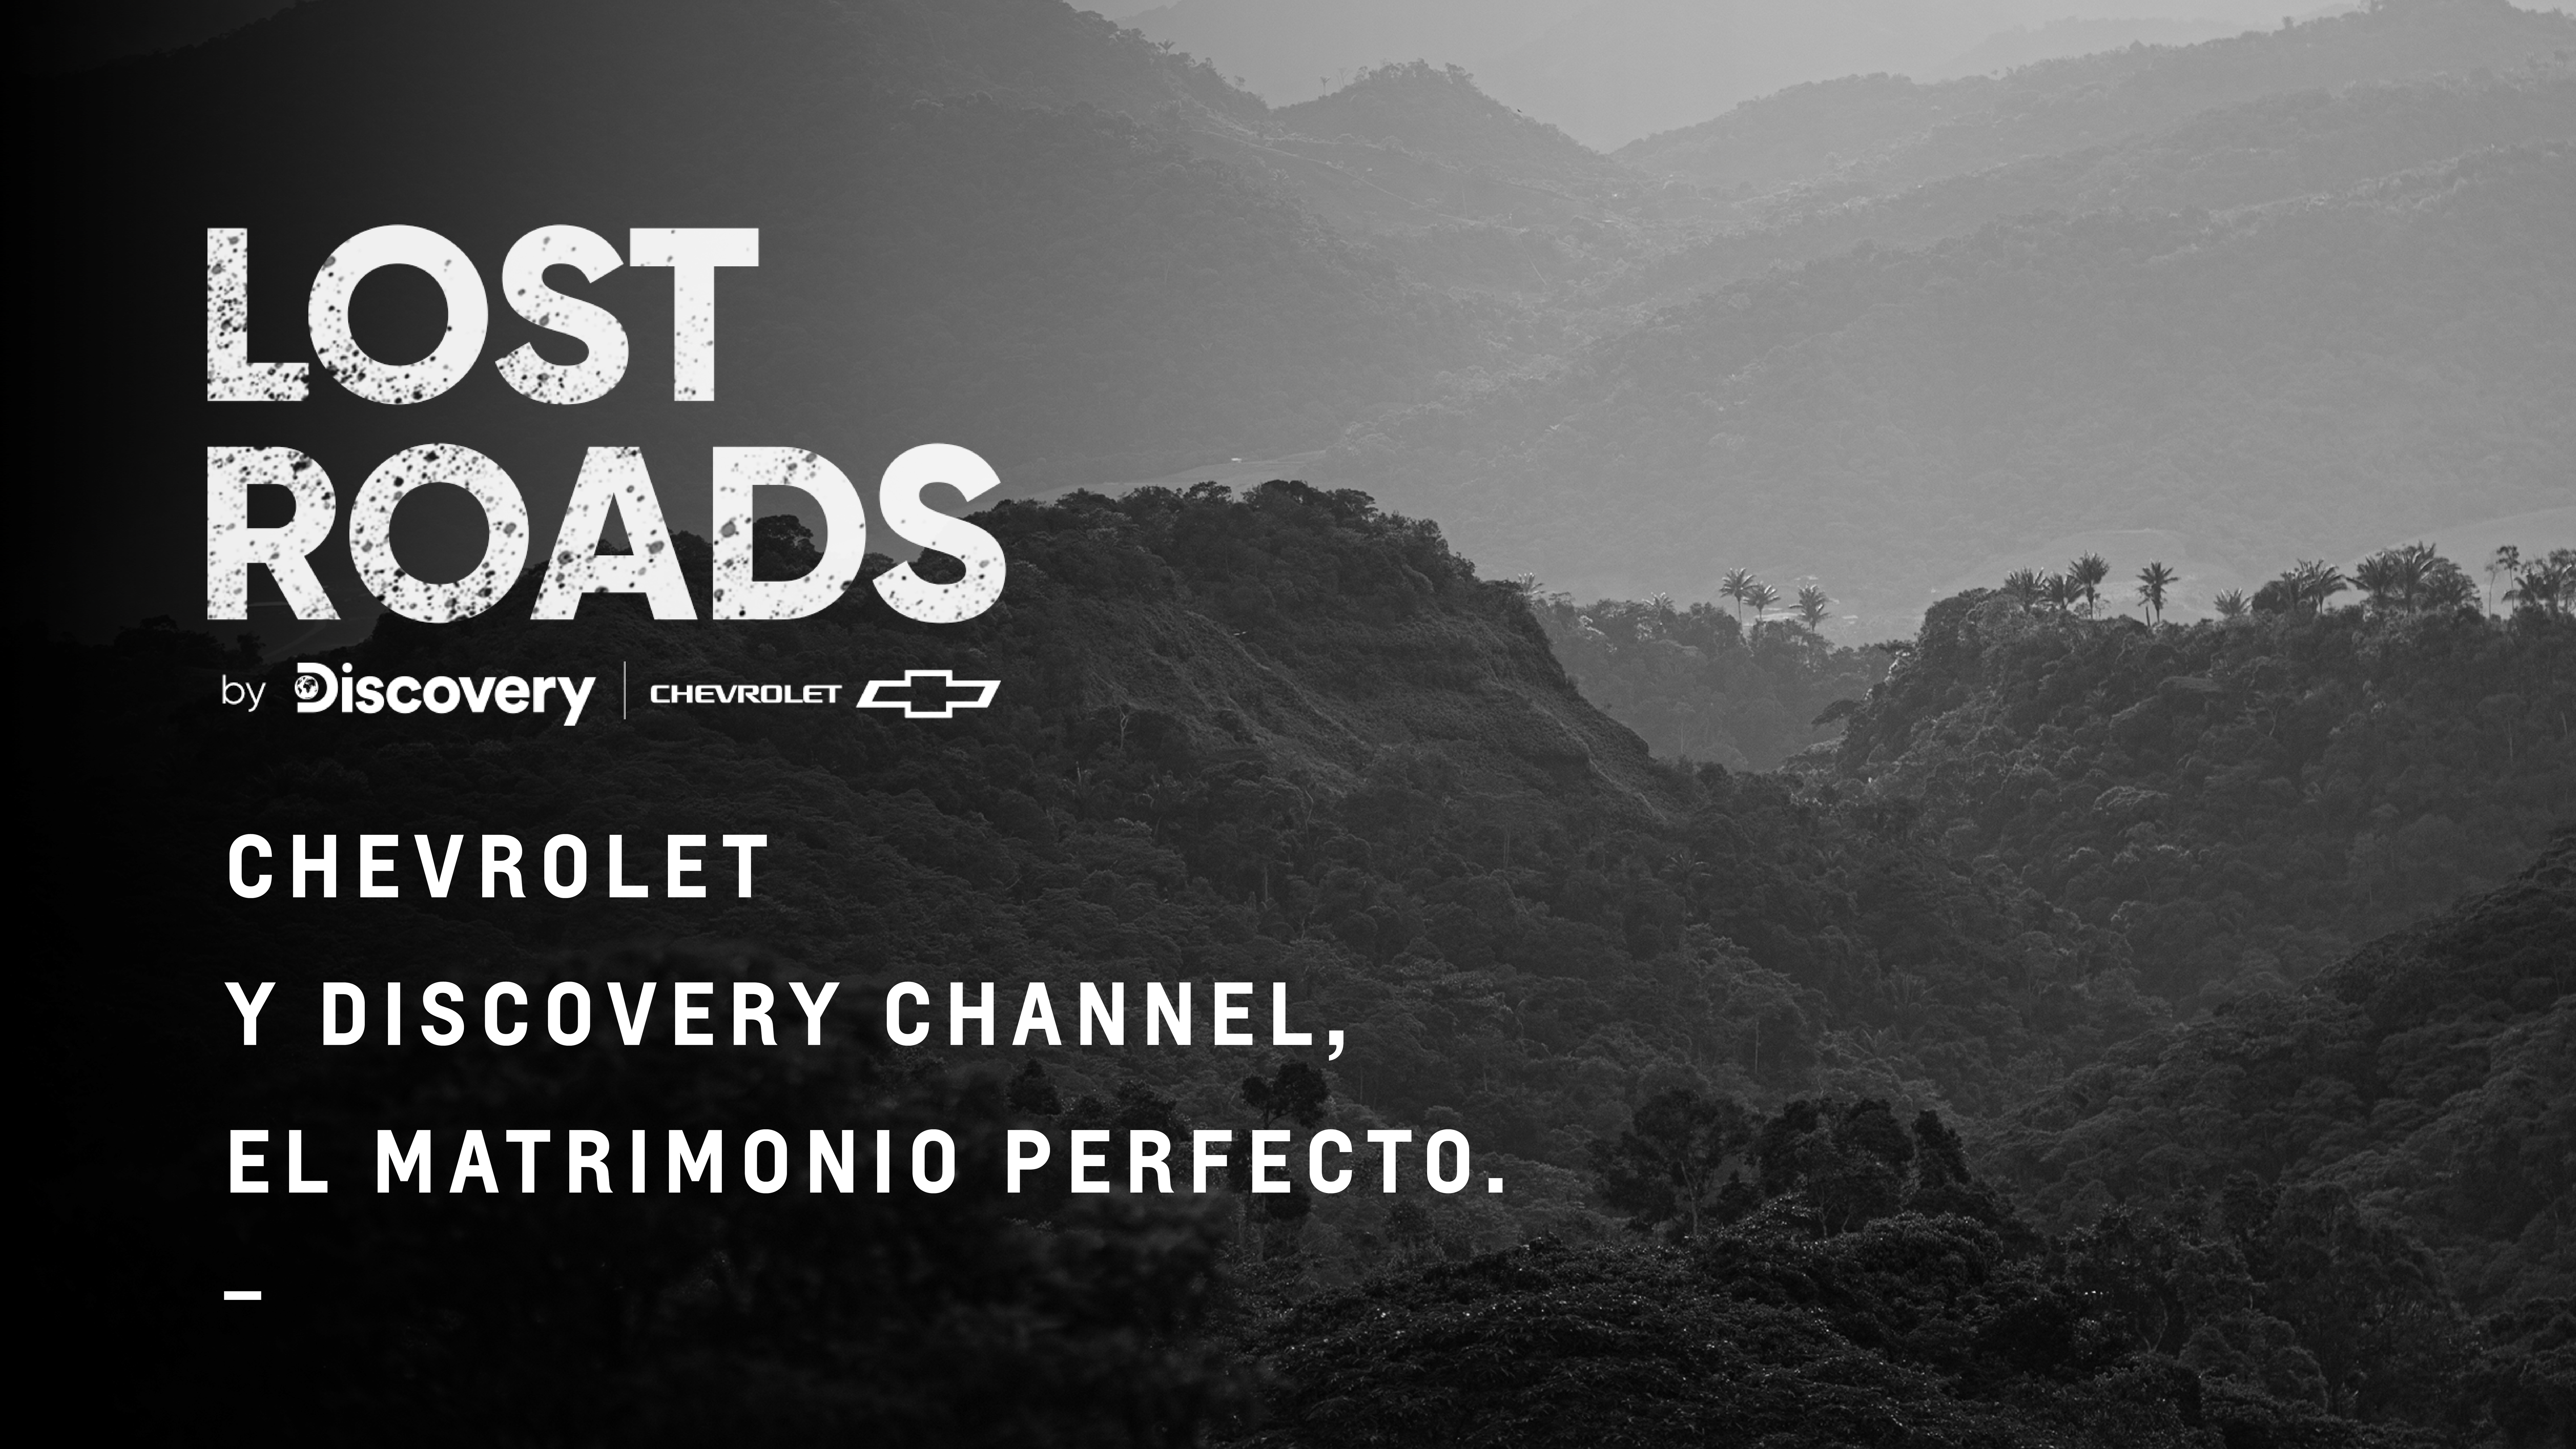 Lost Roads: Chevrolety Discovery Channel, el matrimonio perfecto